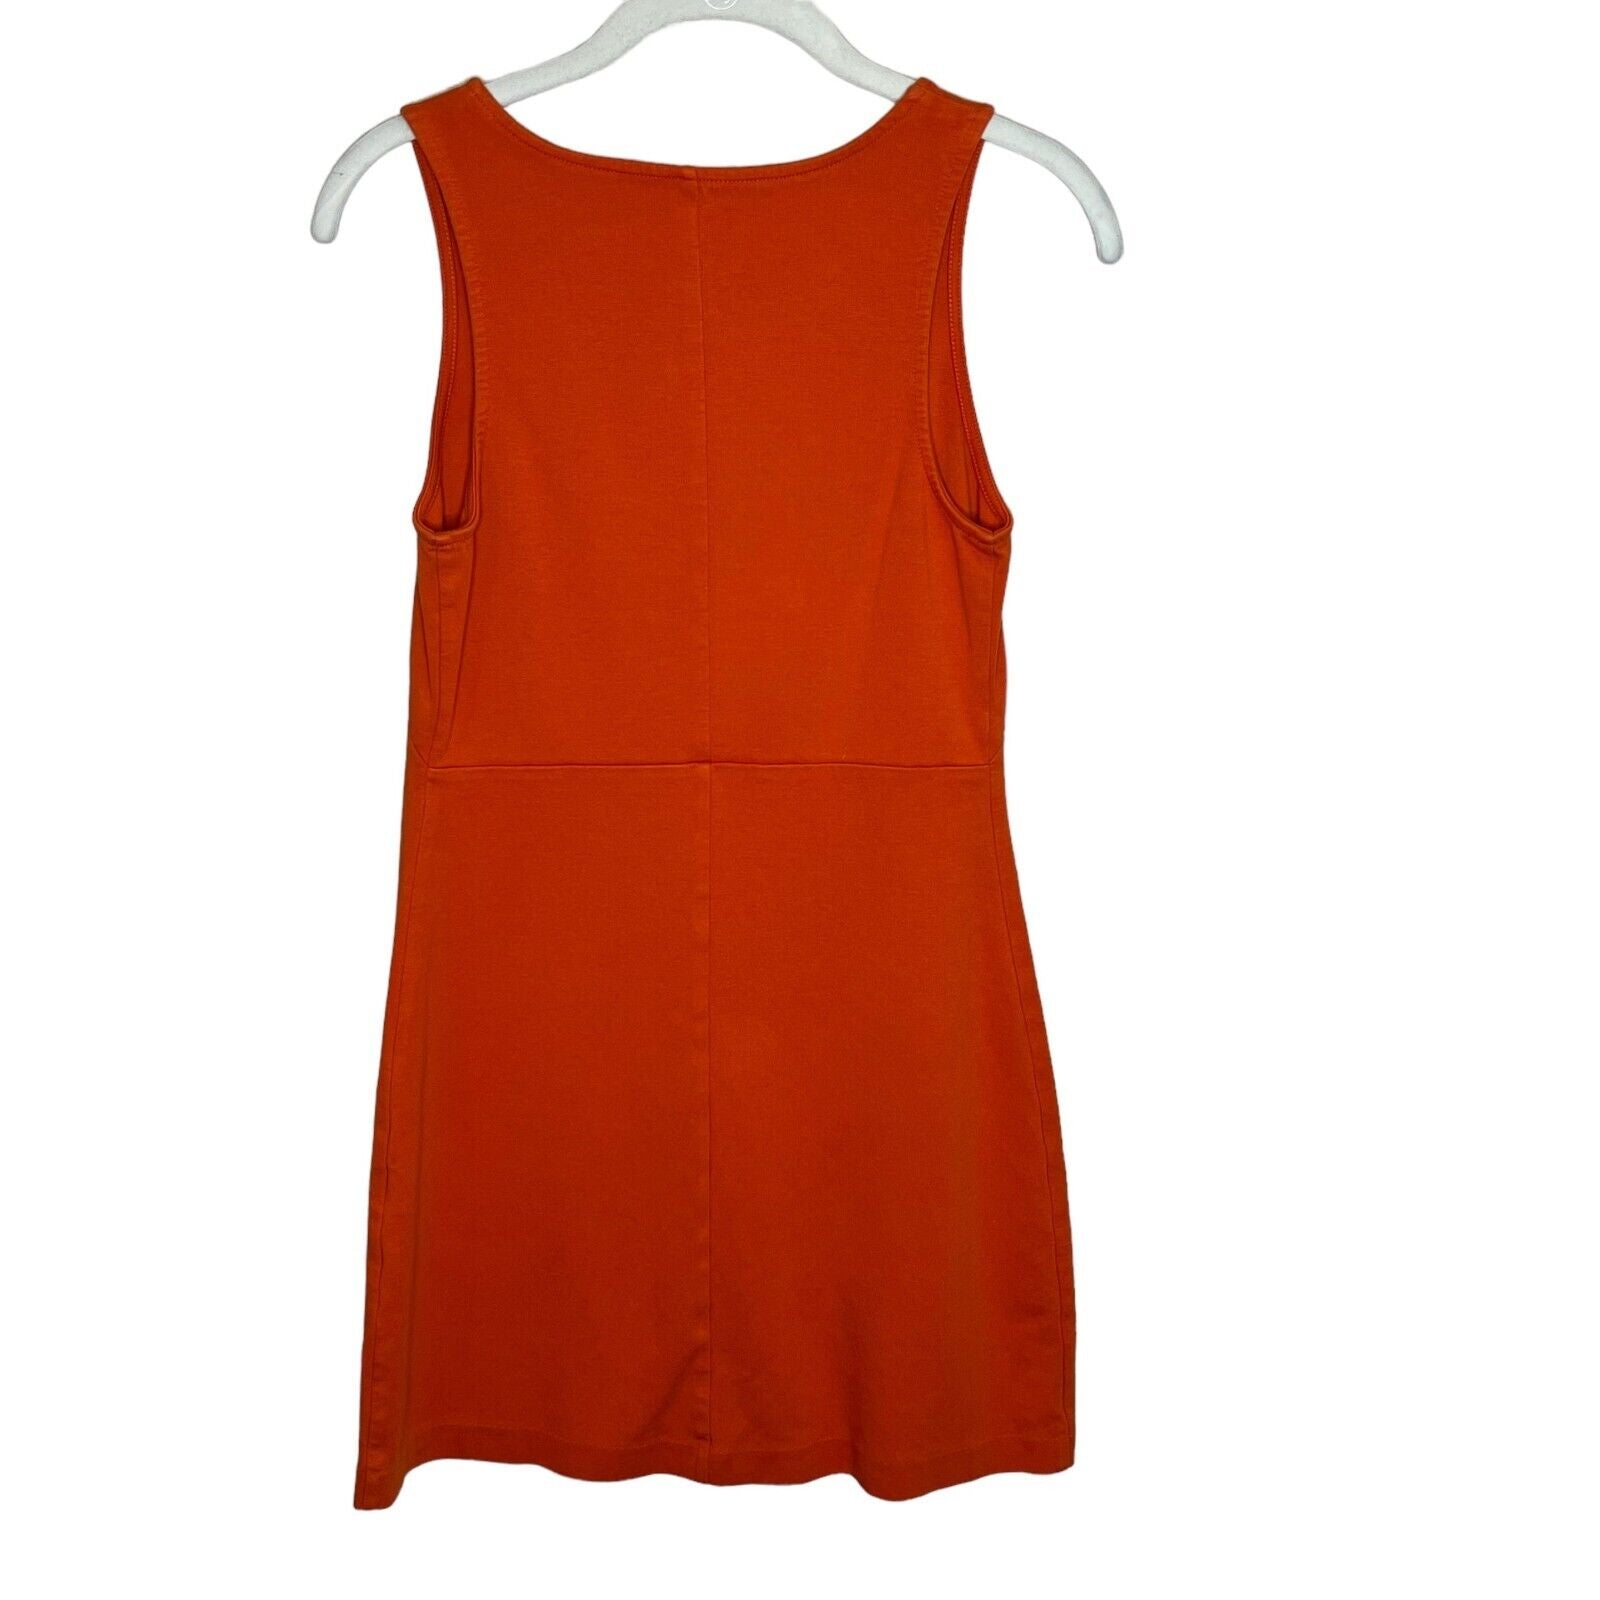 Everlane Party Of One Stretch Orange Mini Dress Size XS